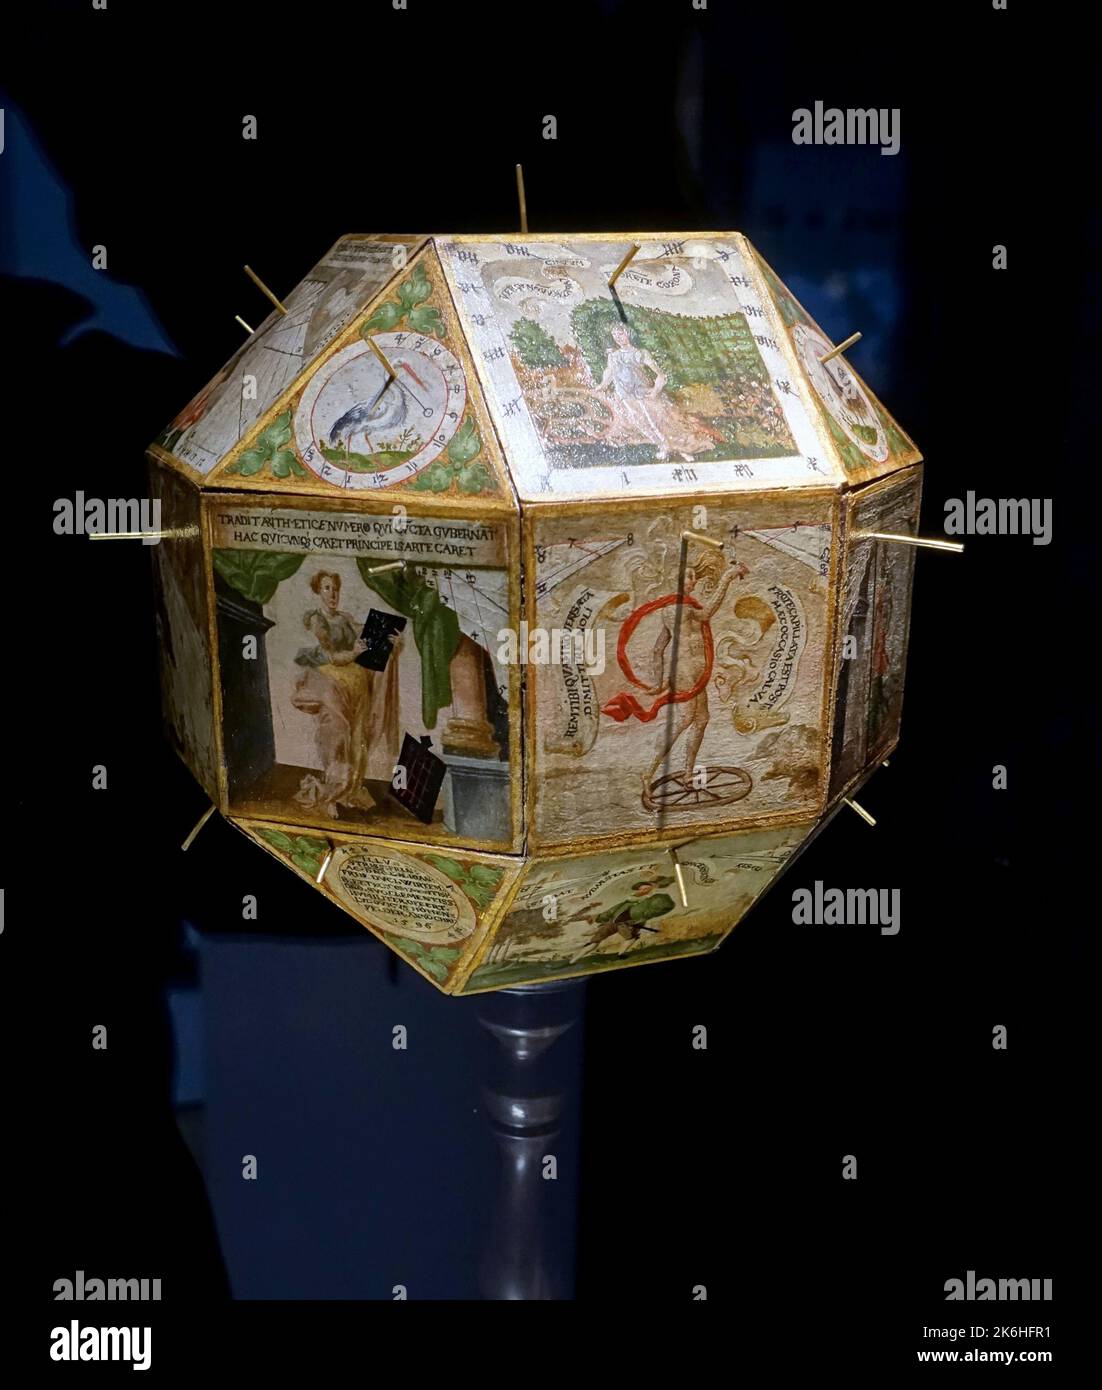 Meridiana poliedrica di Ludwig von Hohenfeld, con 17 diverse meridiane per la regione tra Tubingen e Stoccarda, Germania, 1596, legno, carta, ferro, ottone Foto Stock